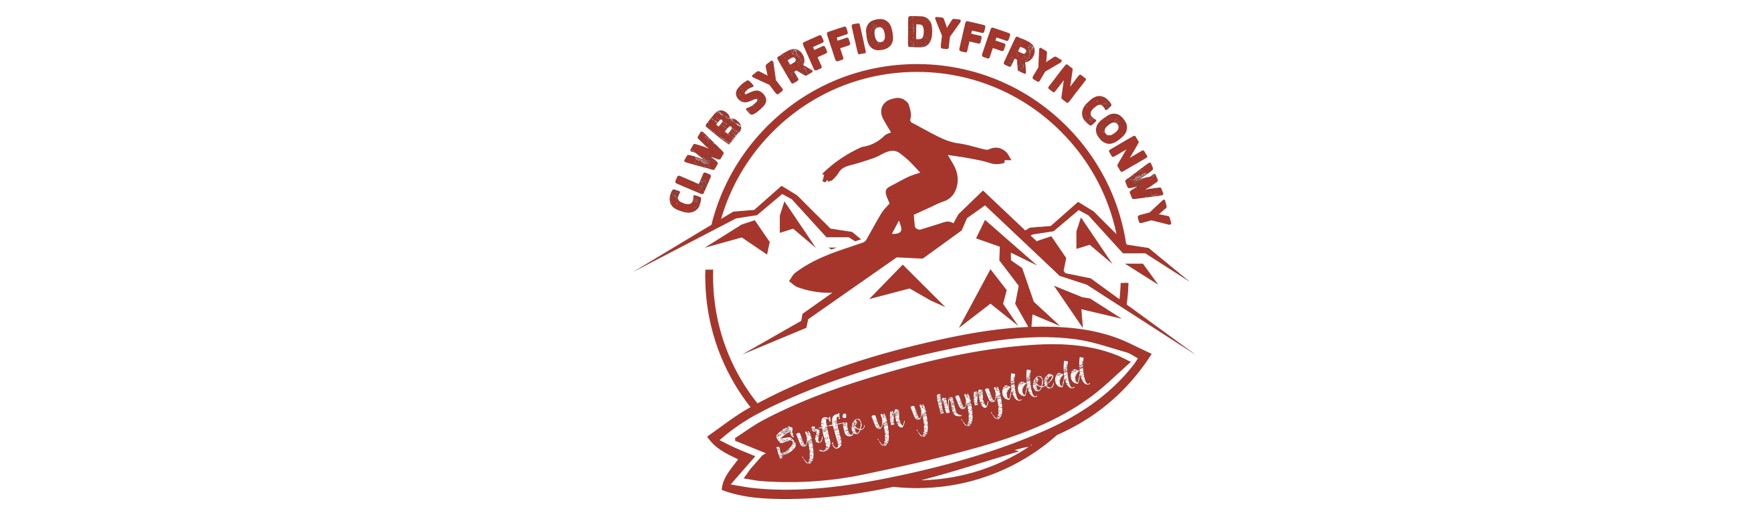 Clwb Syrffio Dyffryn Conwy logo